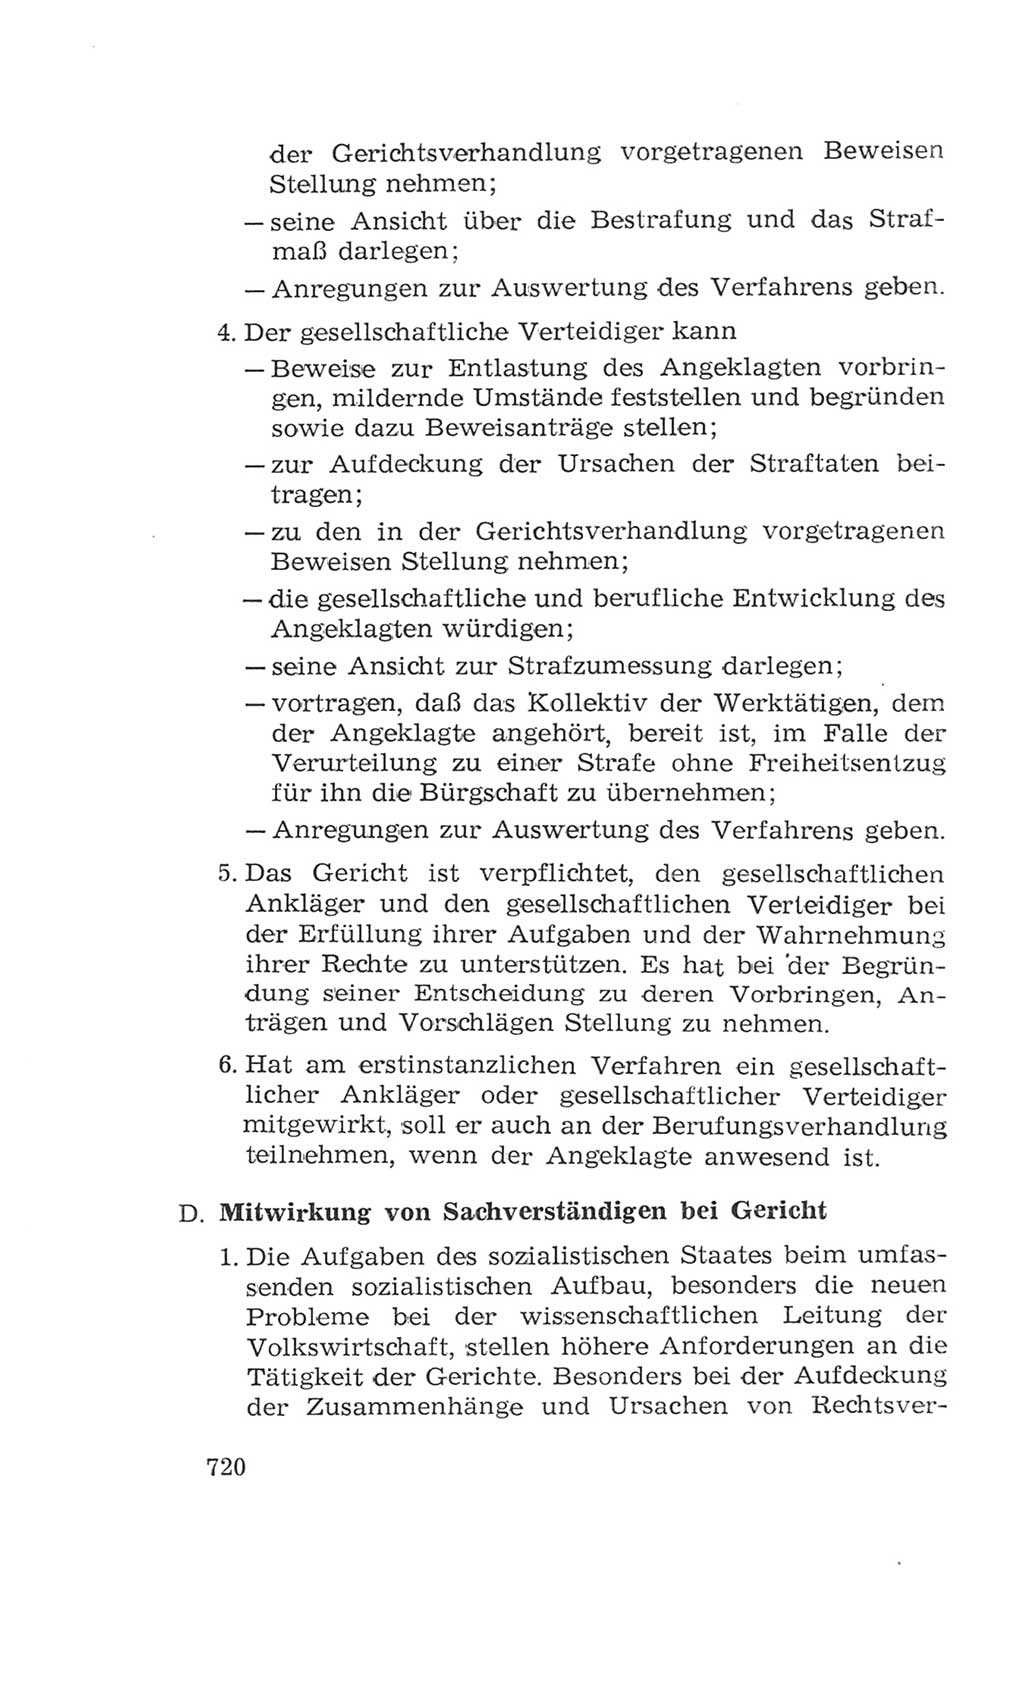 Volkskammer (VK) der Deutschen Demokratischen Republik (DDR), 4. Wahlperiode 1963-1967, Seite 720 (VK. DDR 4. WP. 1963-1967, S. 720)